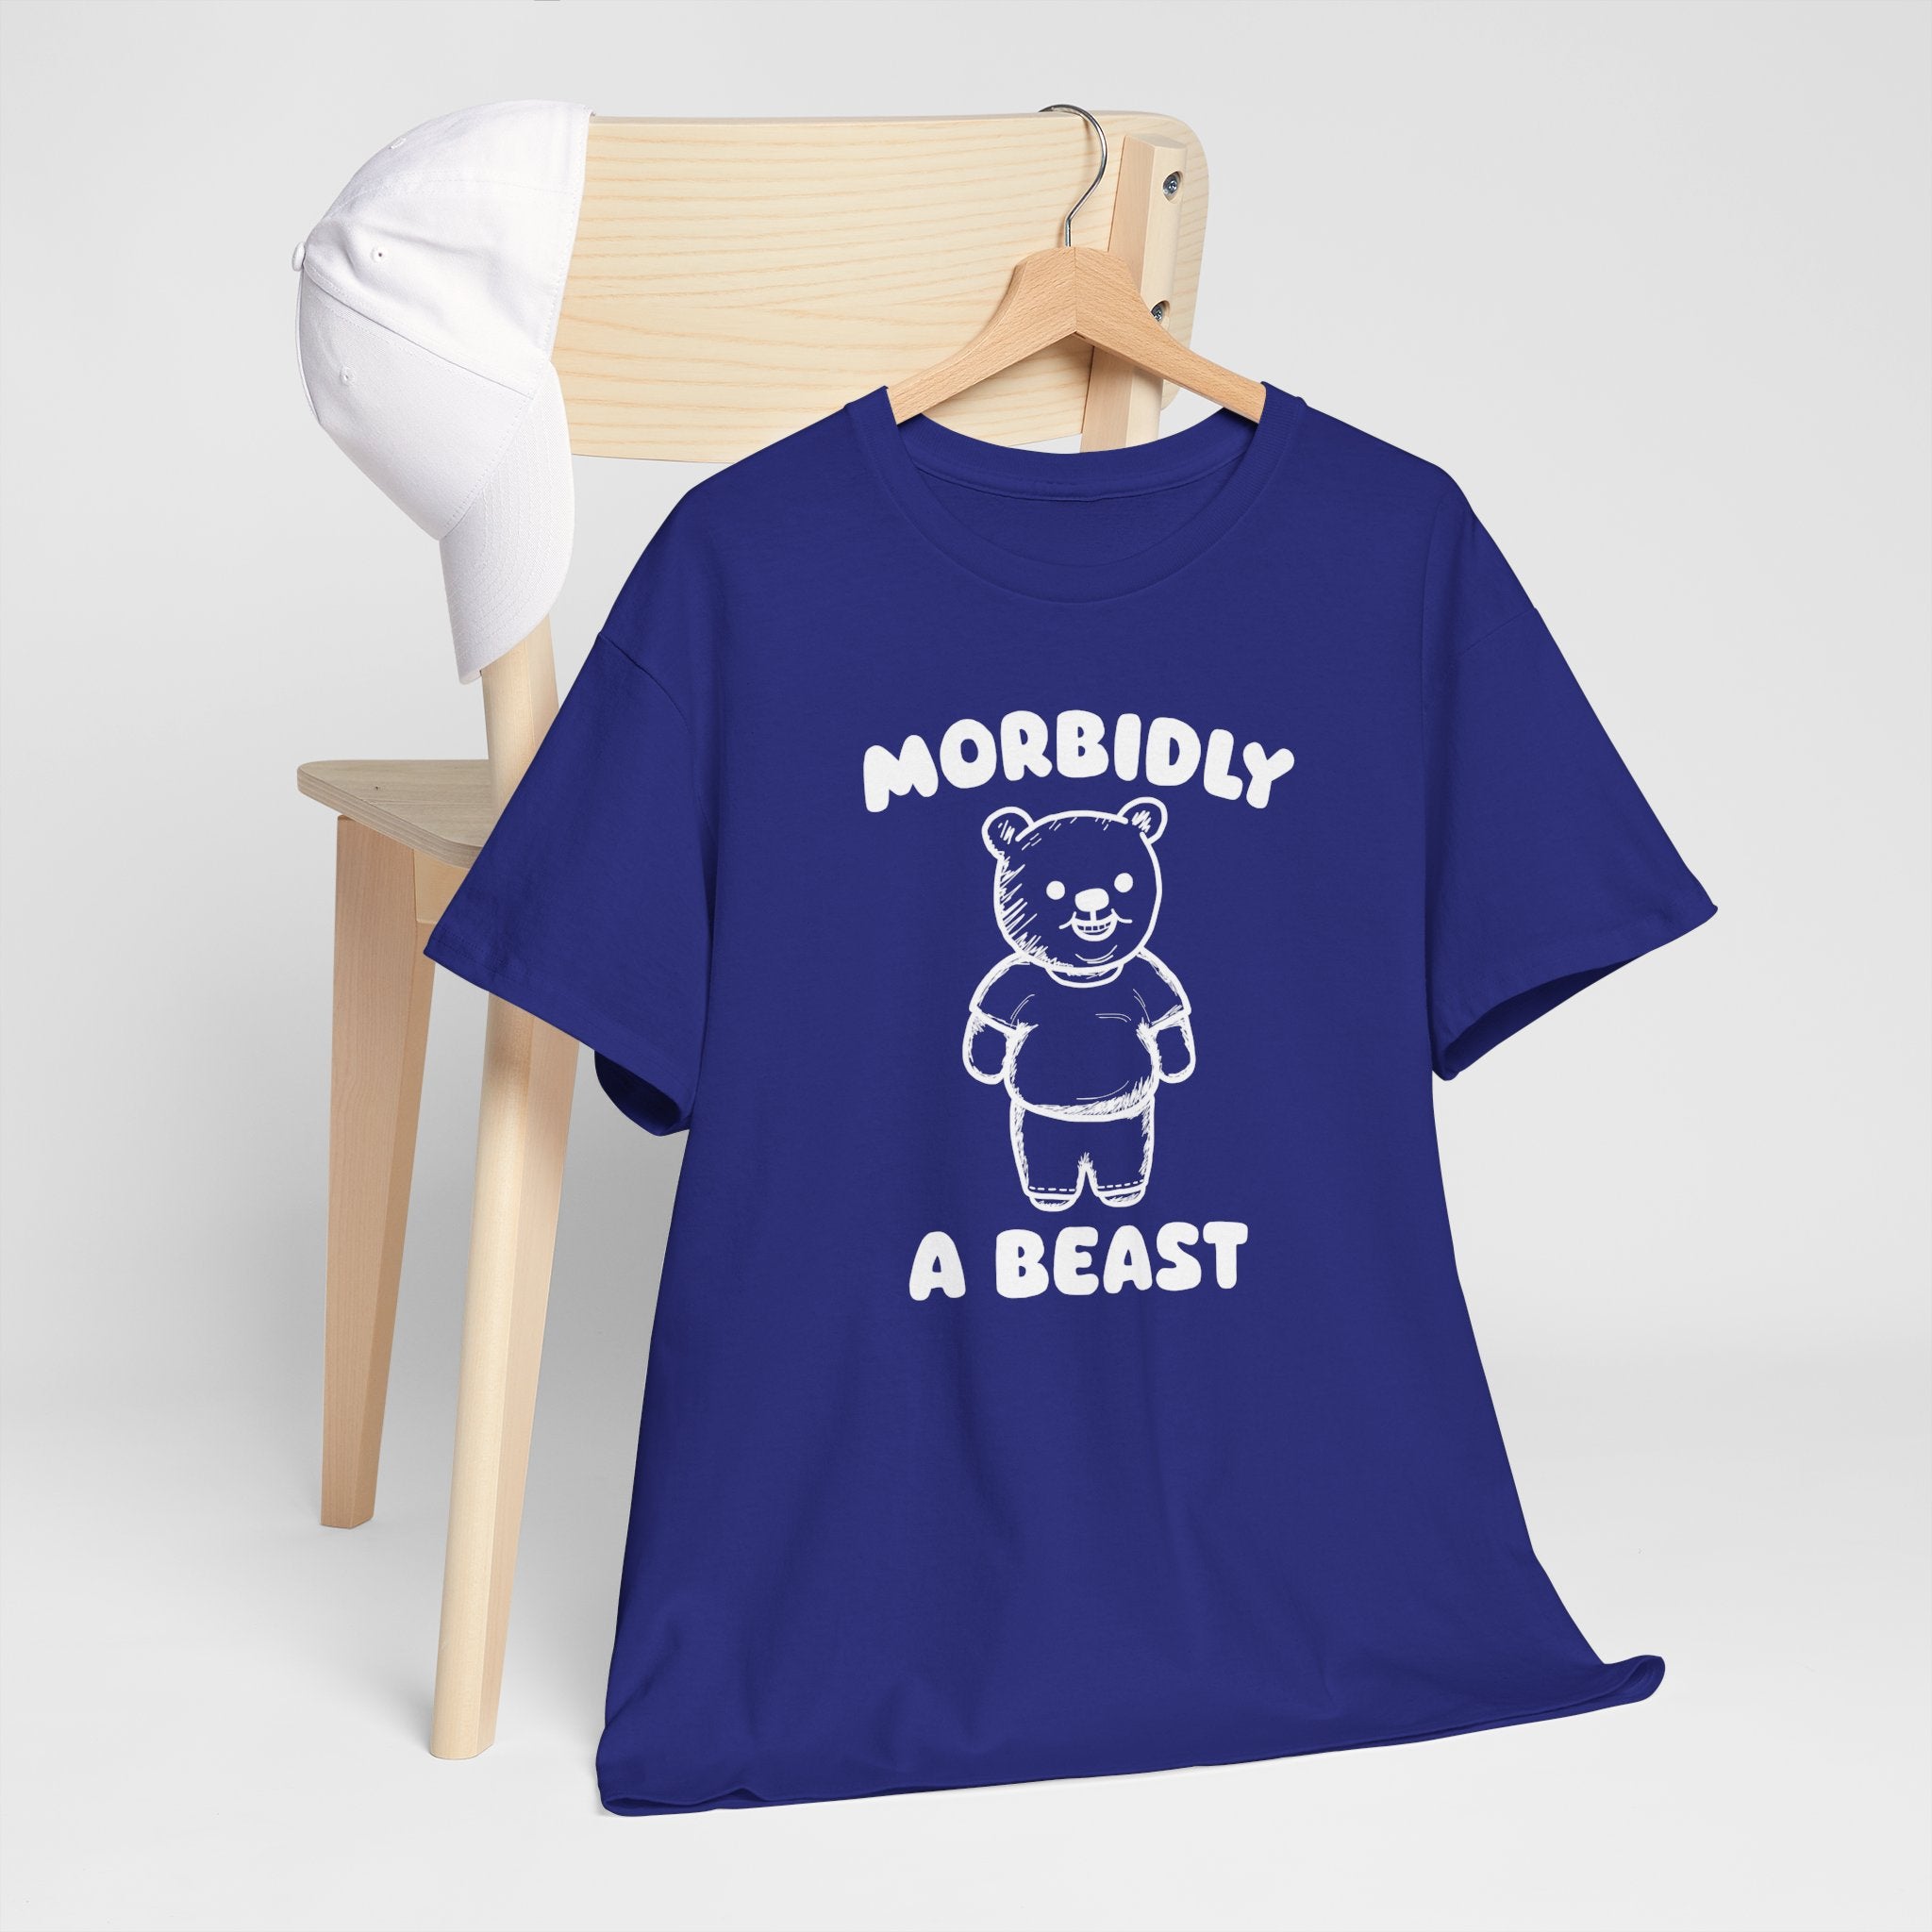 Morbidly a Beast Shirt